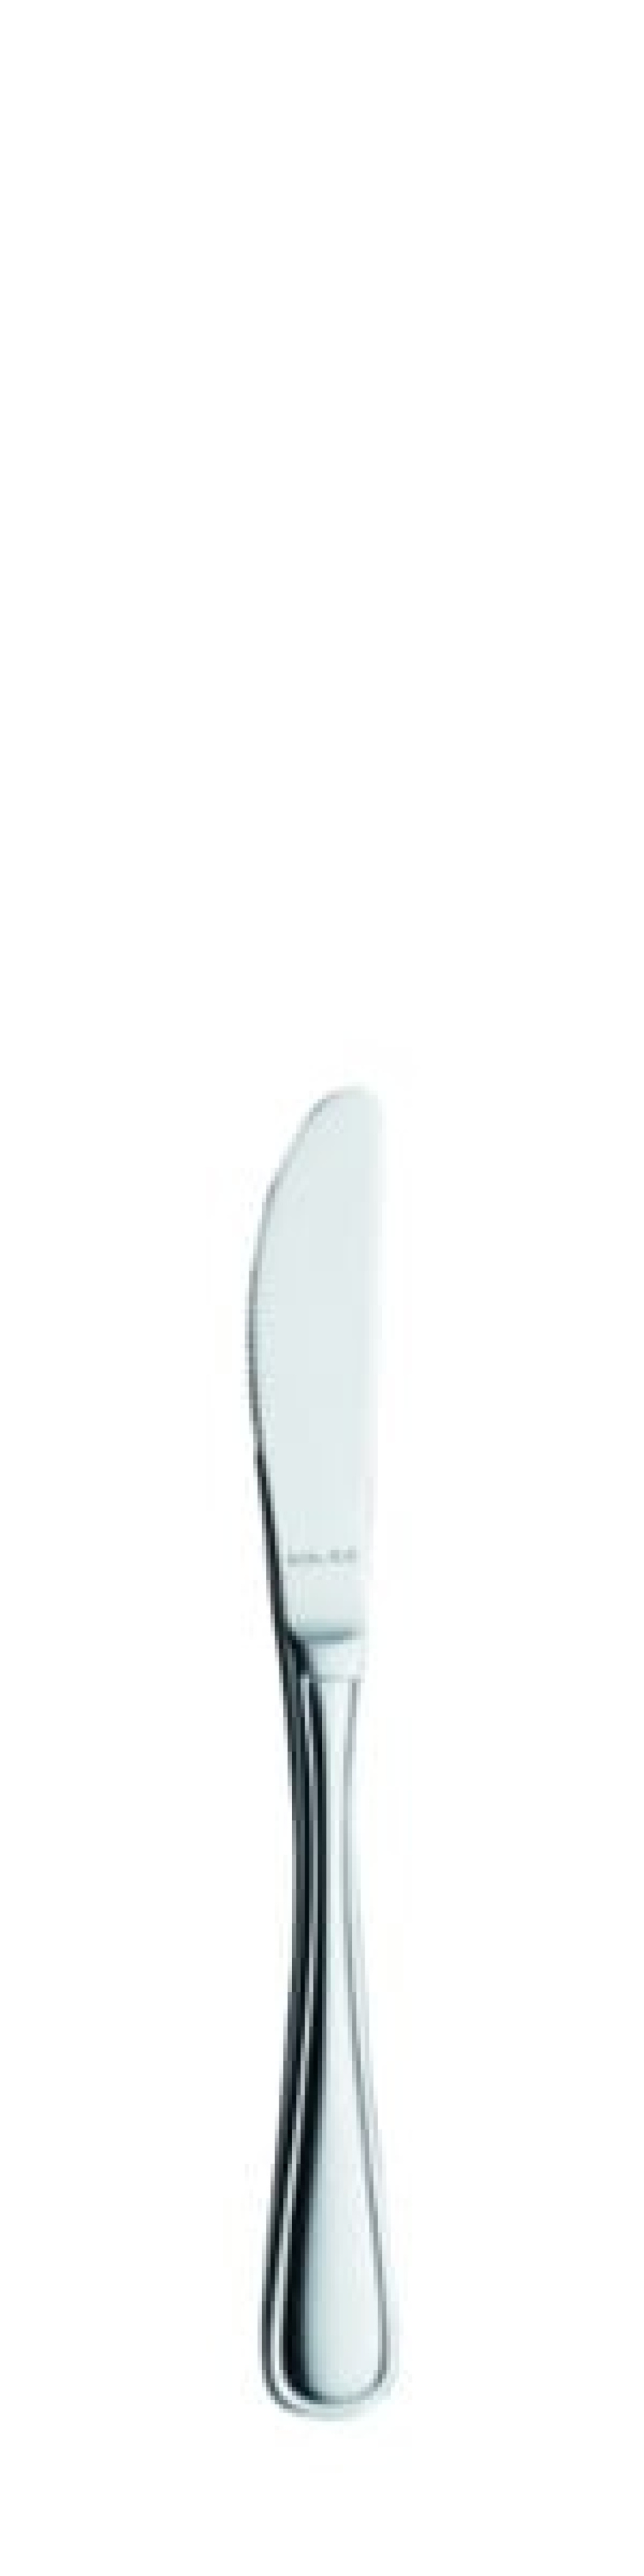 Selina Smørkniv 170 mm - Solex i gruppen Borddækning / Bestik / Smør knive hos The Kitchen Lab (1284-21524)